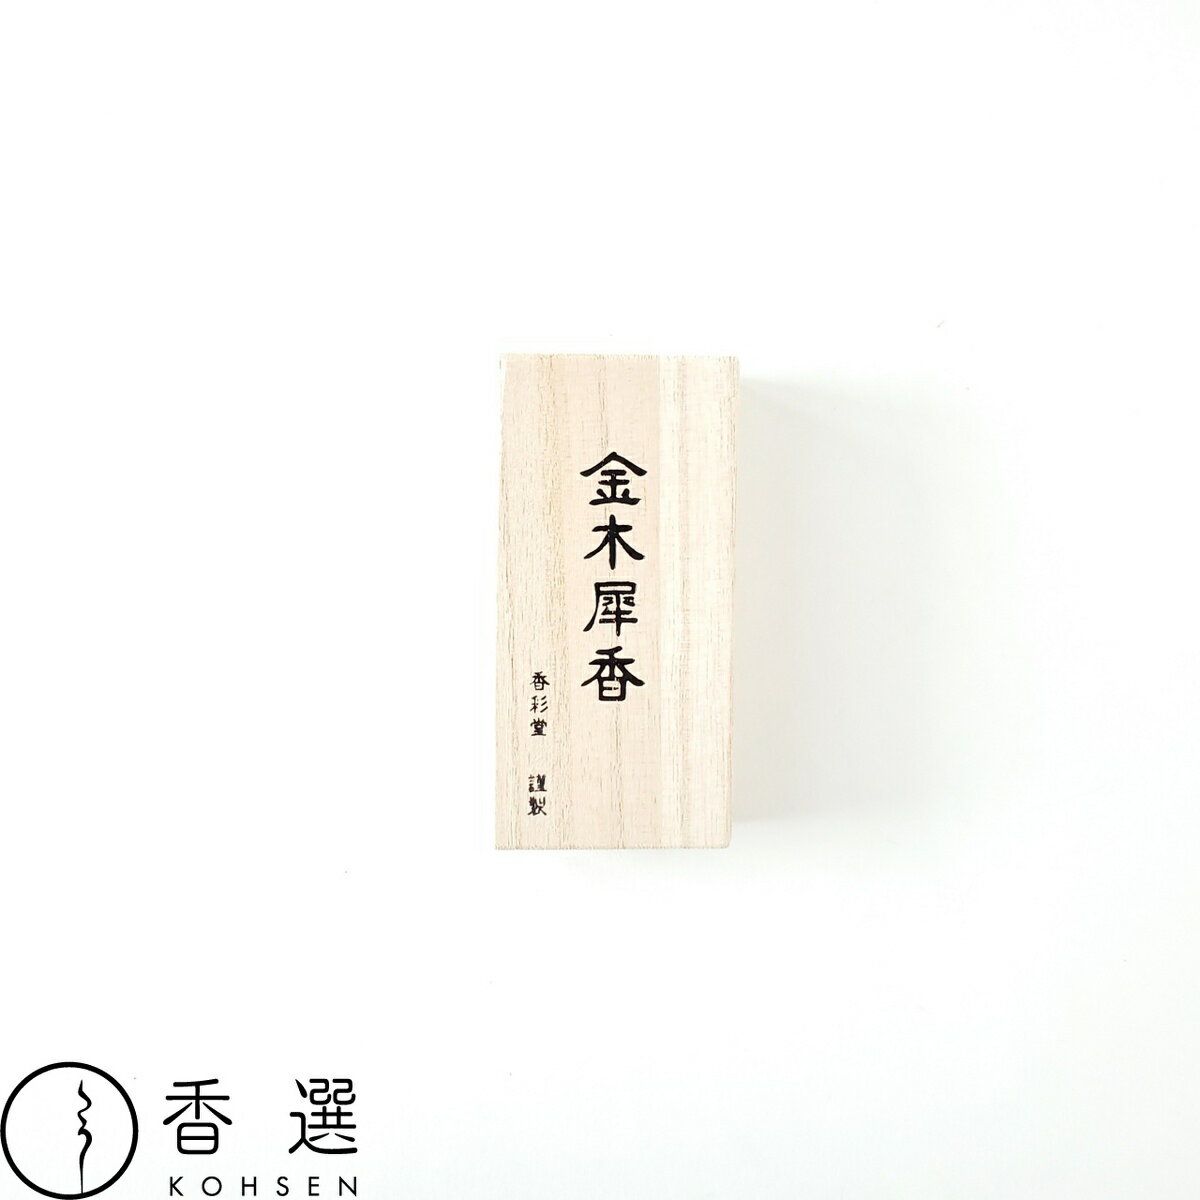 香彩堂 古都の香 金木犀香 スティック型 お香 お線香 インセンス 京都 日本製